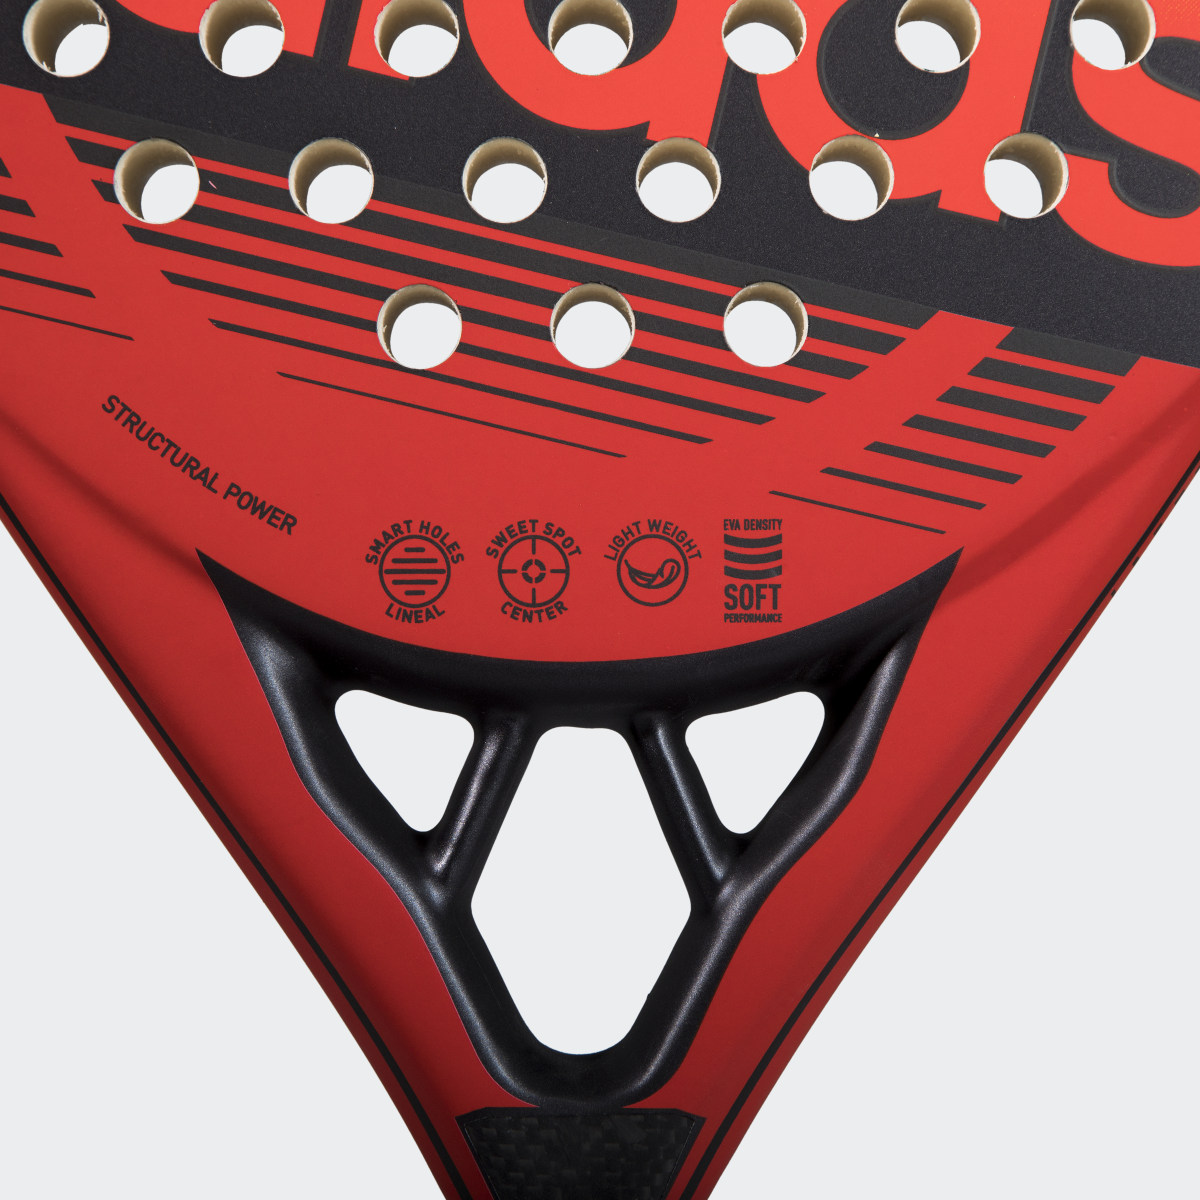 Adidas RX 200 Light Racquet. 5